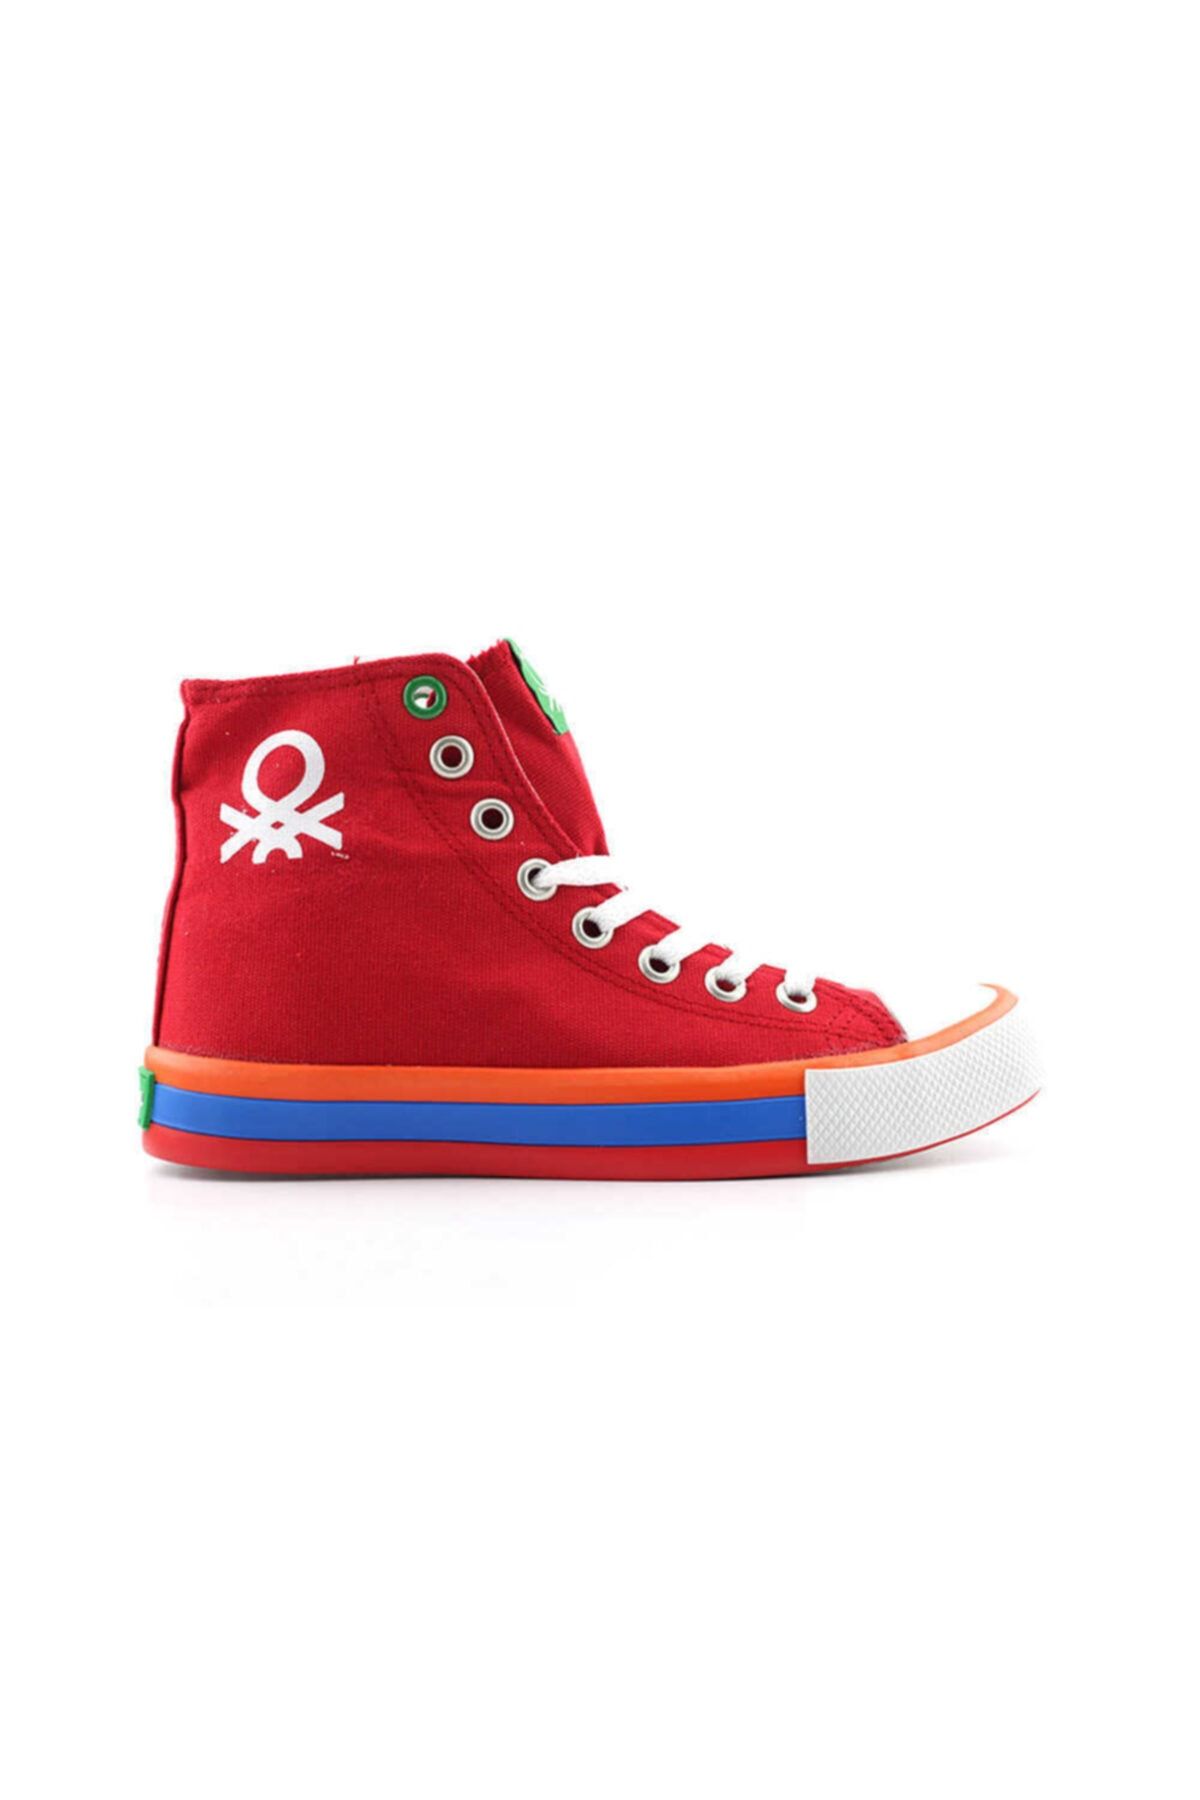 United Colors of Benetton Kadın Spor Ayakkabısı-kırmızı